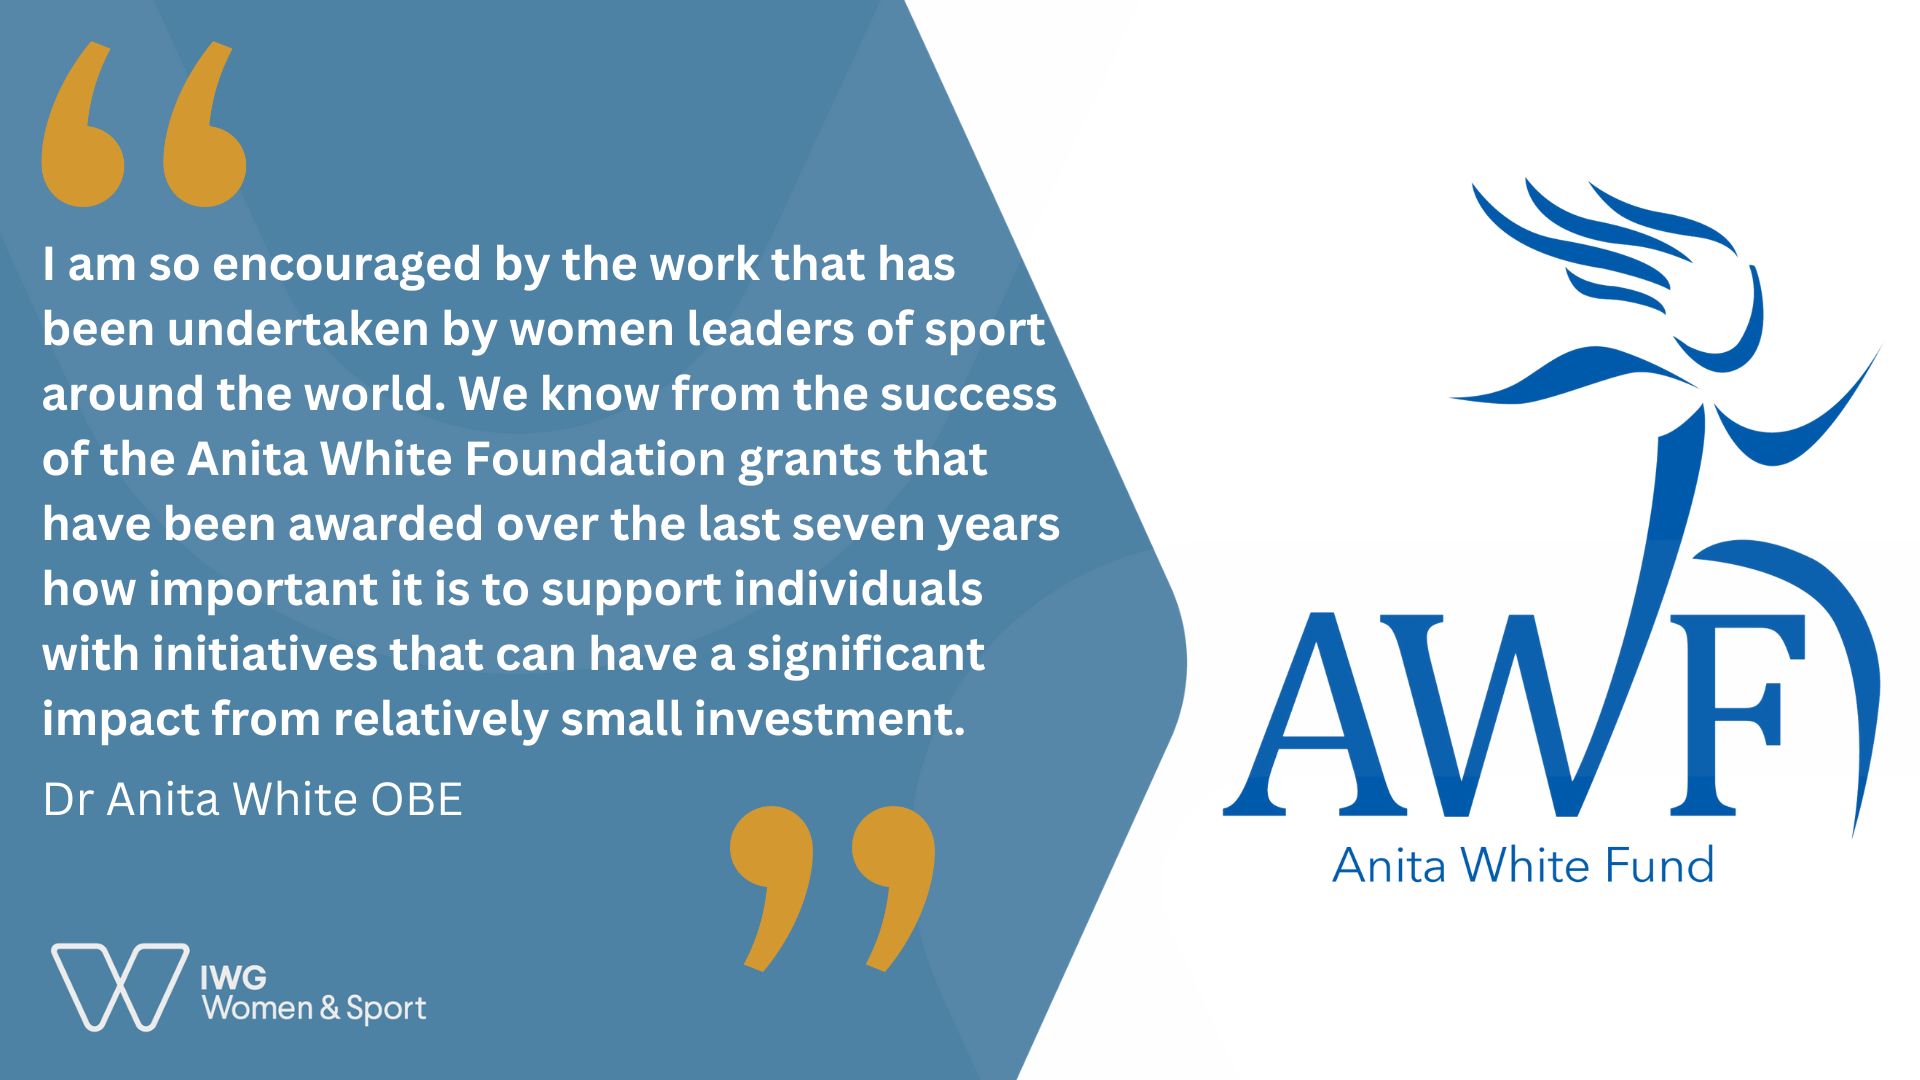 Quote from Anita White OBE regarding the Anita White Fund